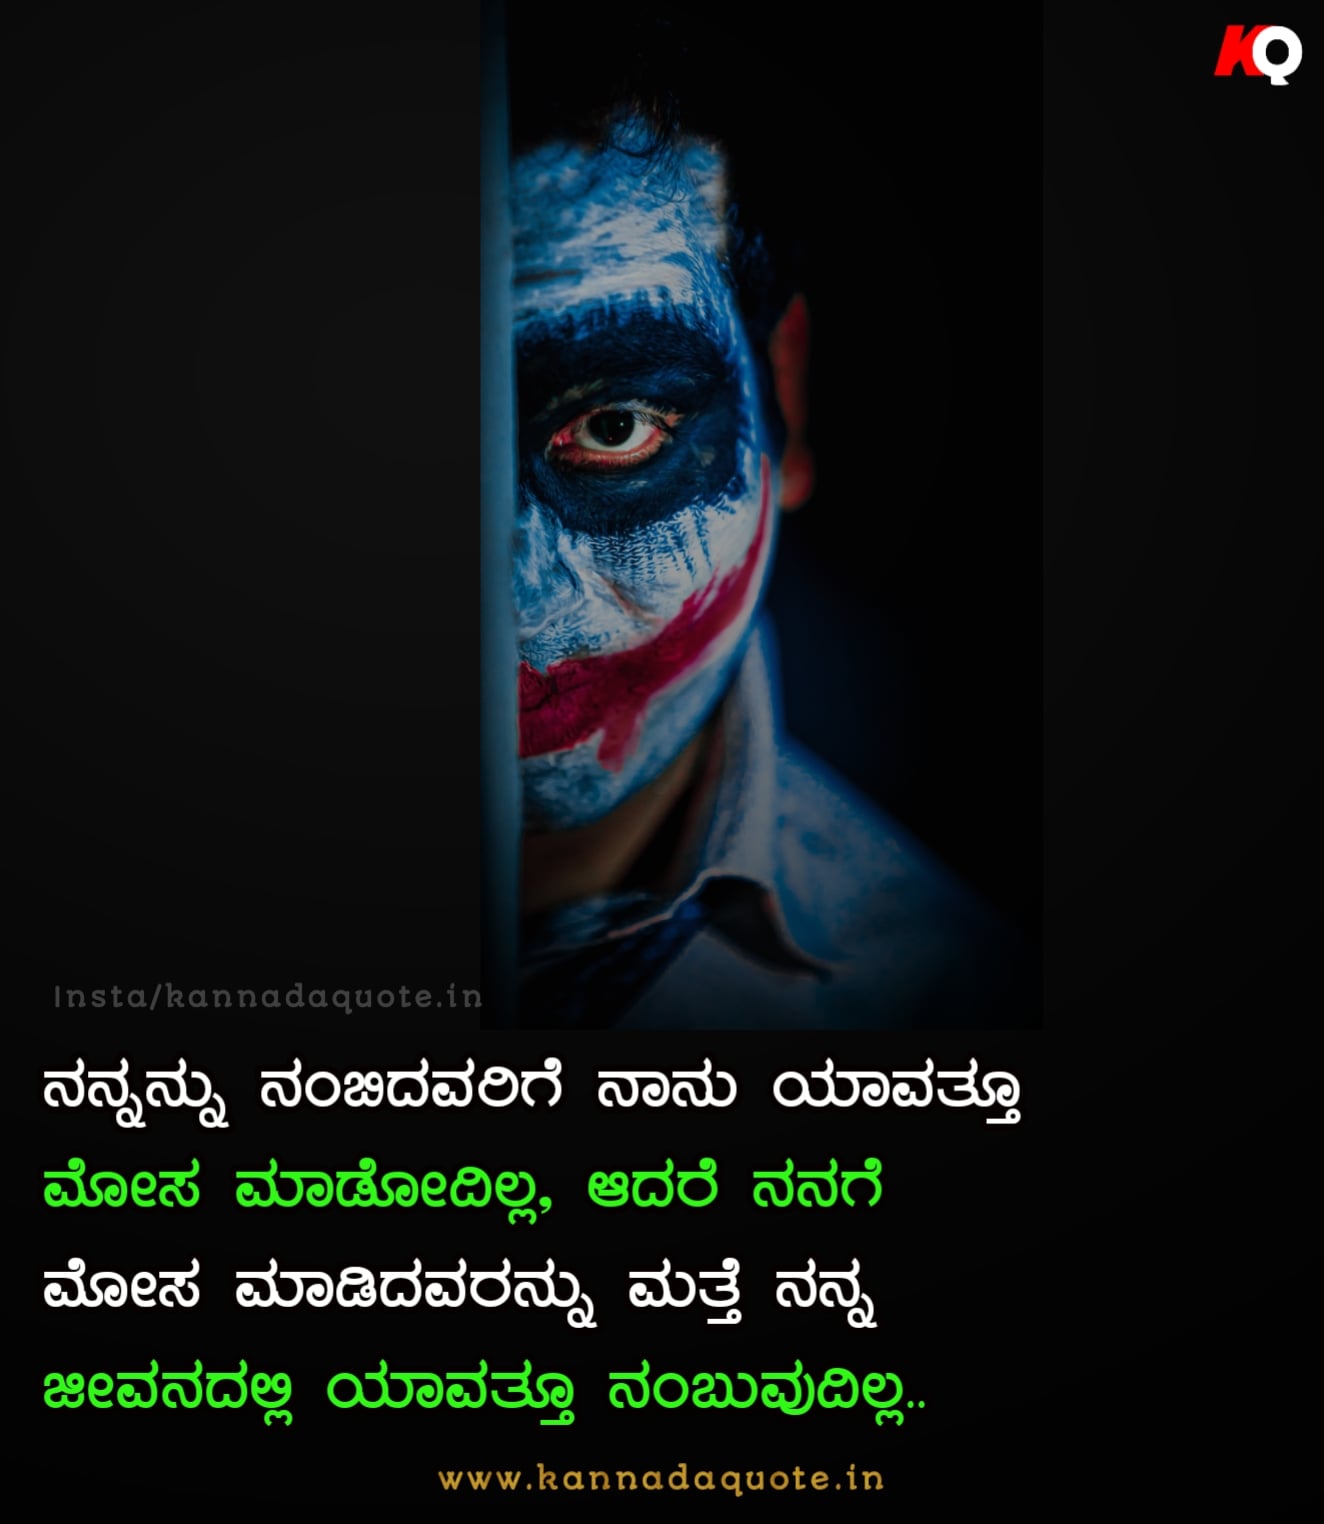 Instagram Kannada Attitude Quotes Text